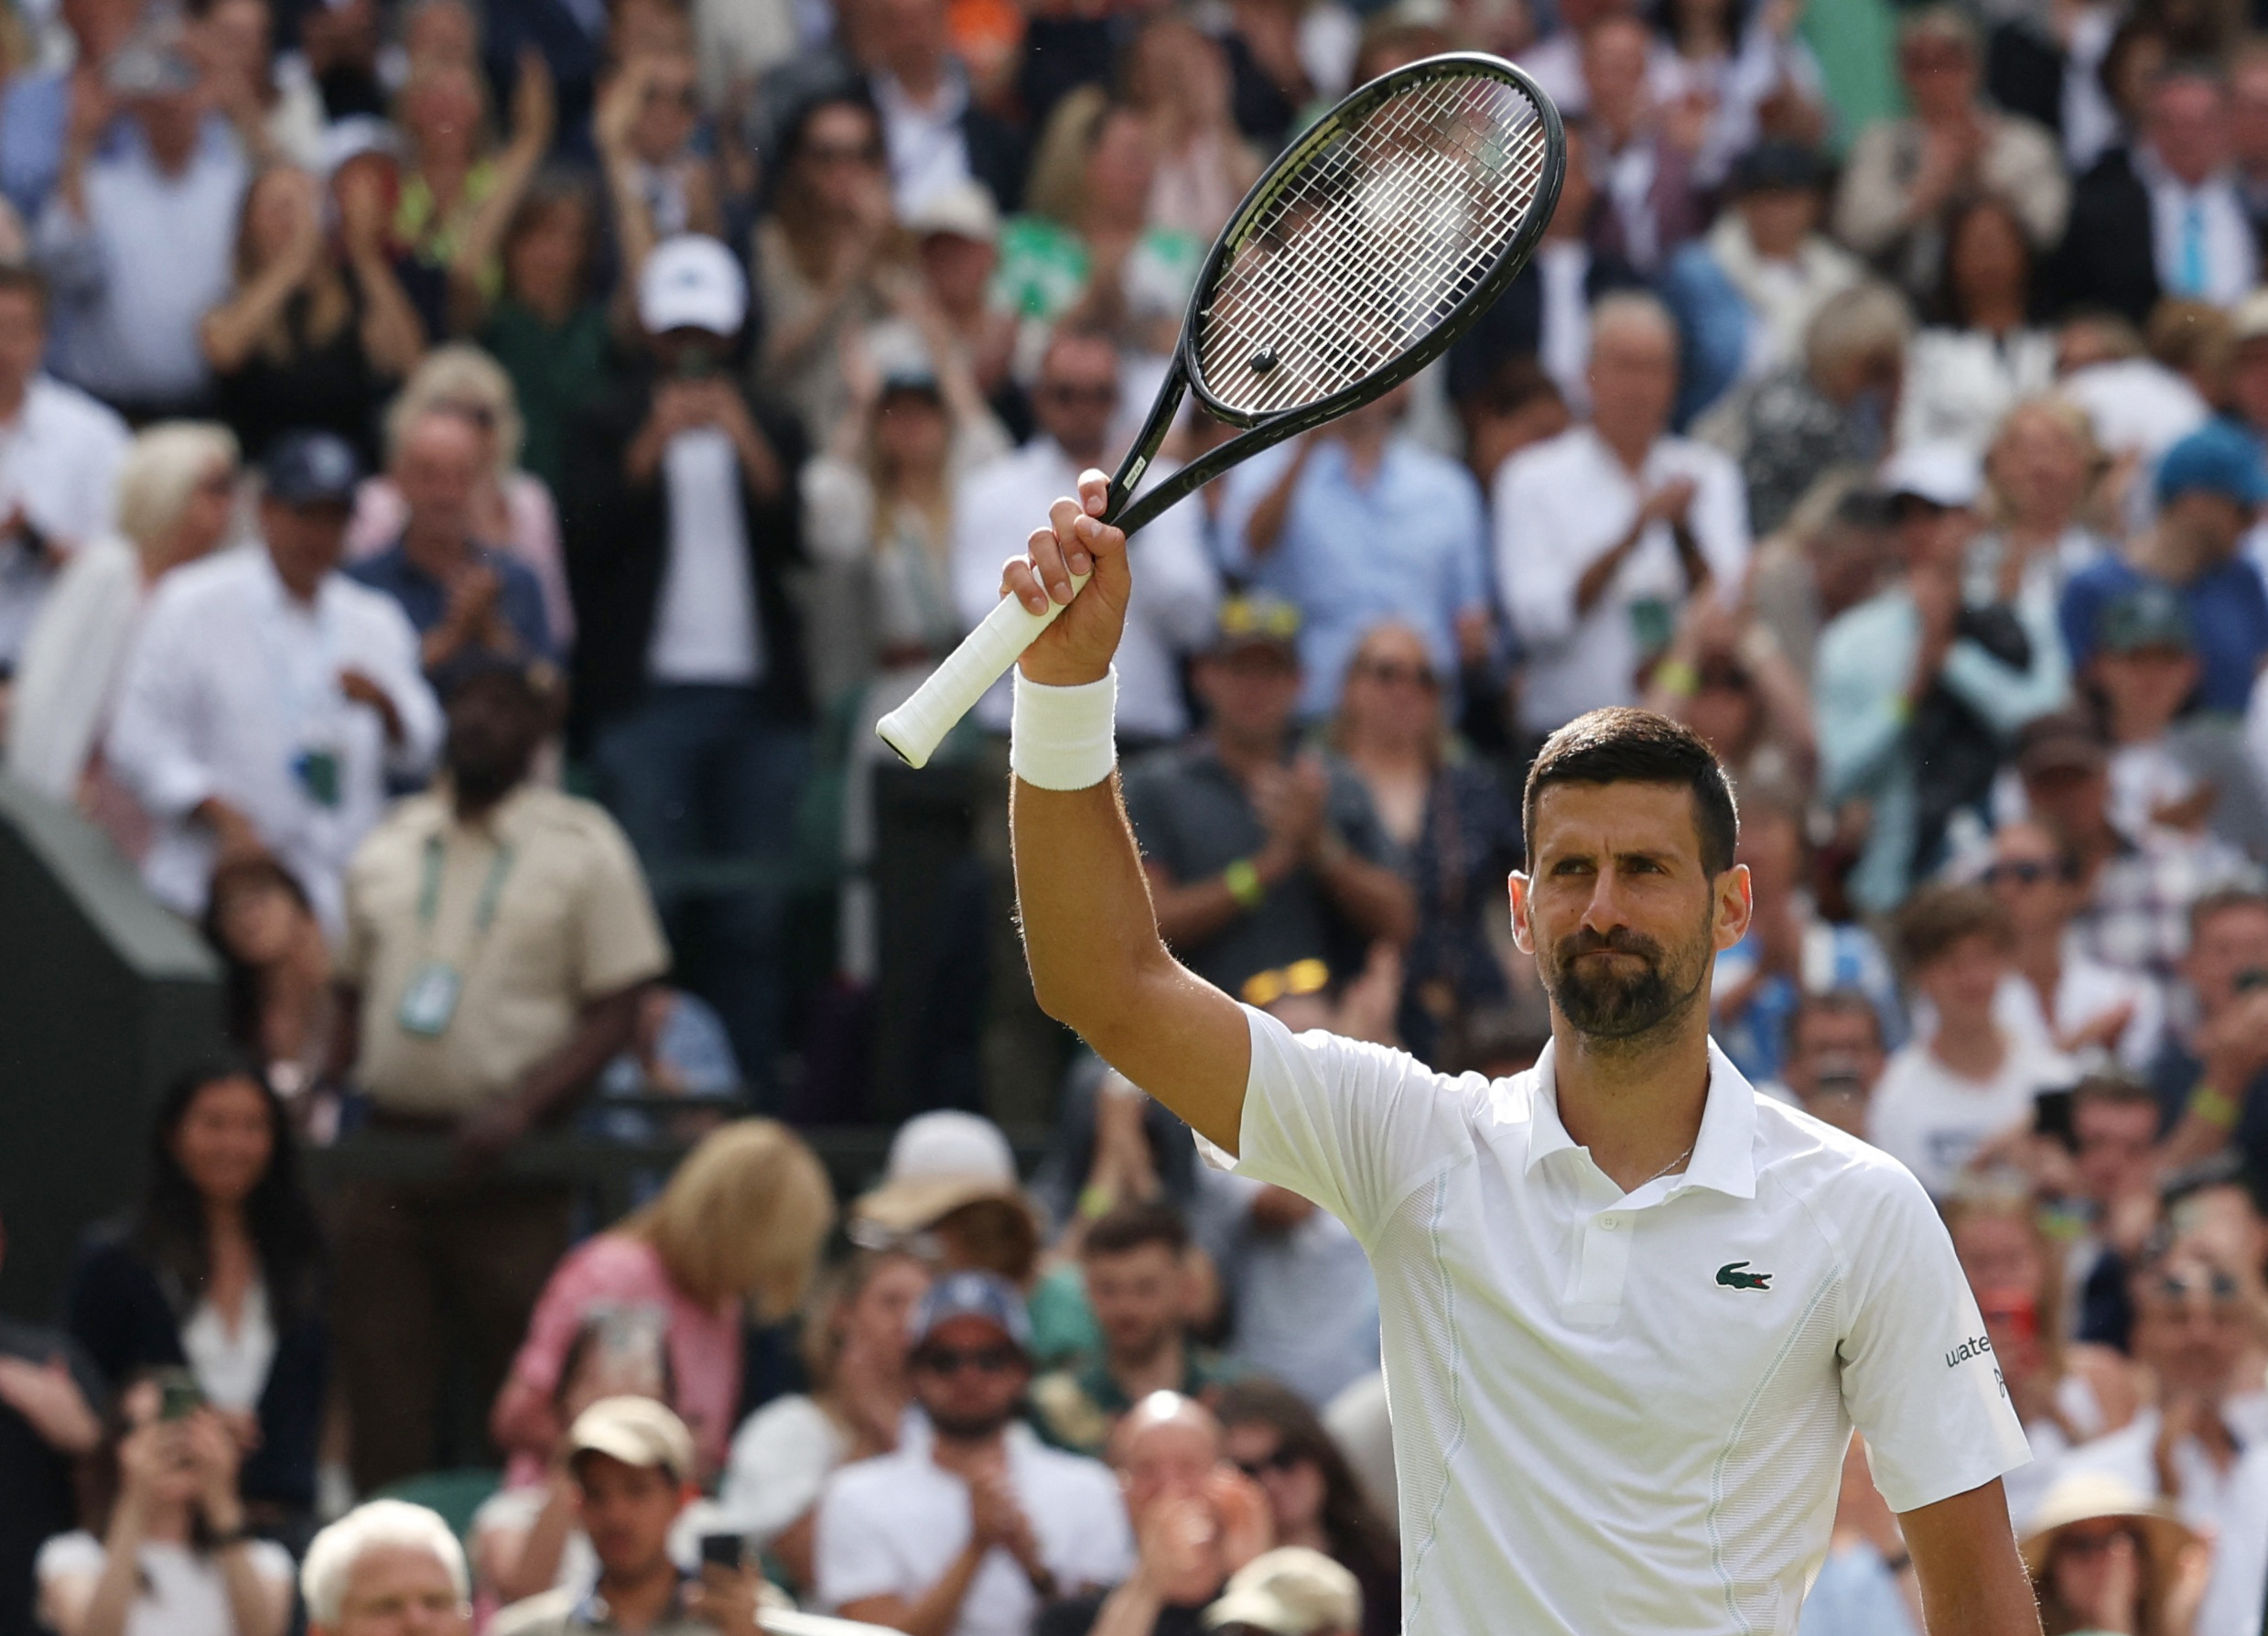 Djokovic survives spirited challenge from British wildcard Fearnley